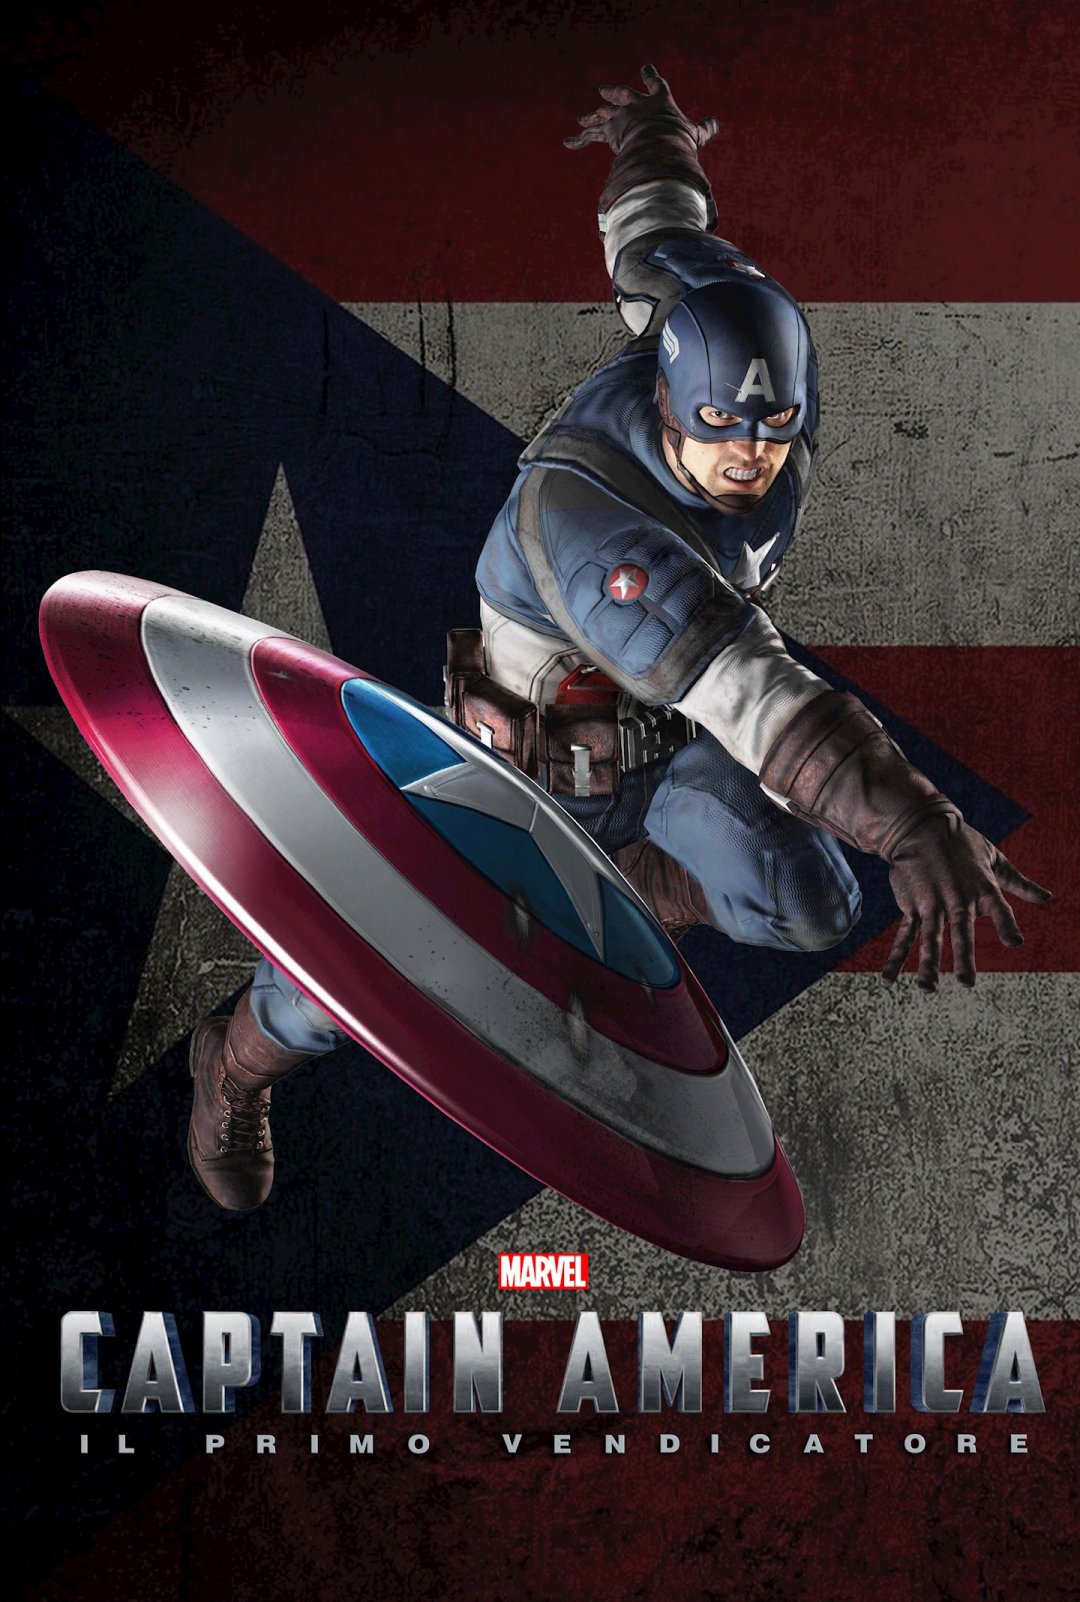 美国队长(captain america)漫威漫画超级英雄史蒂夫·罗杰斯飞